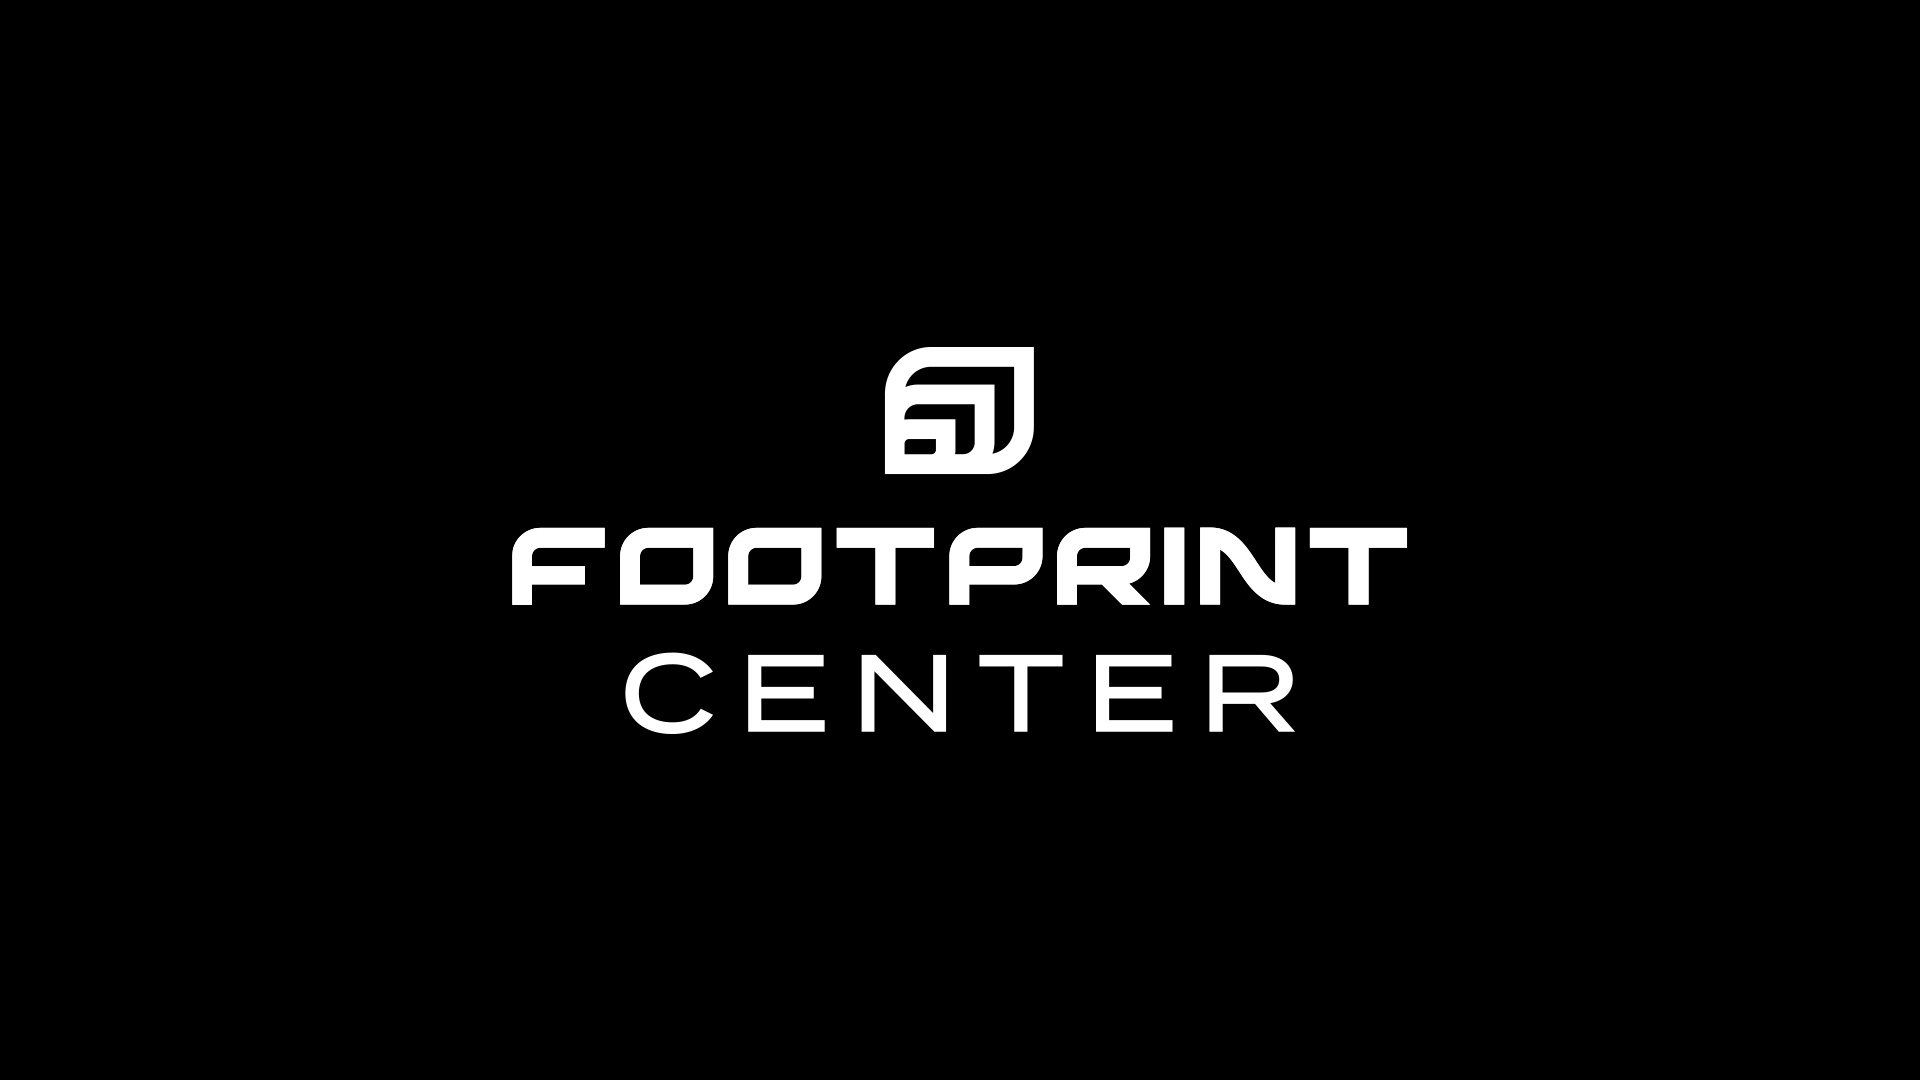 Inside the PHOENIX SUNS' $230,000,000 Footprint Center